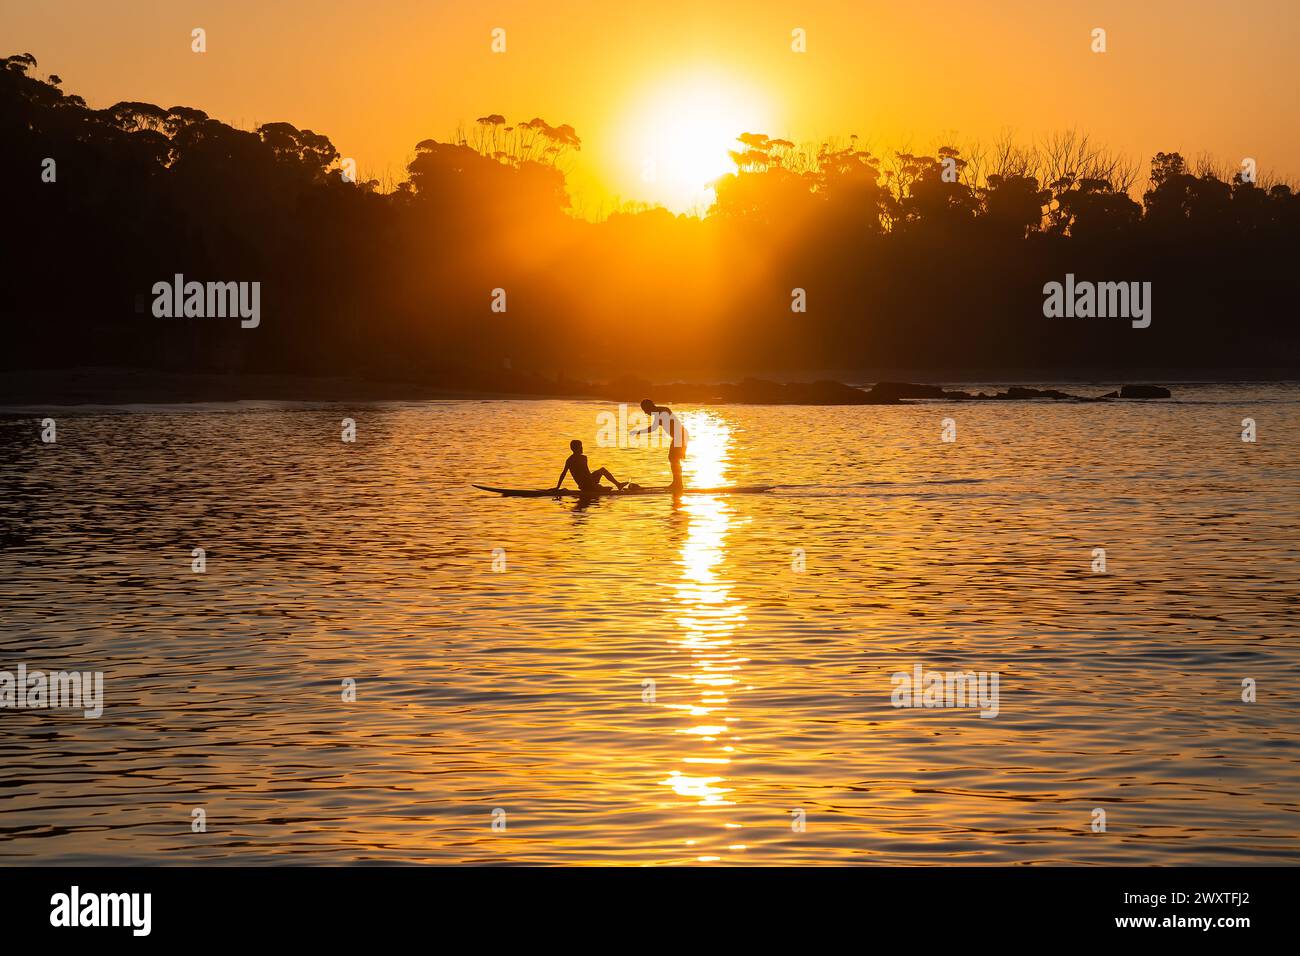 24.03.30-Manyana Beach at Sunset, 214 KM südwestlich von Sydney, NSW, Australien. Silhouetten von Einheimischen, die sich entspannen. Der Strand von Manyana verläuft von Manyana Villag Stockfoto